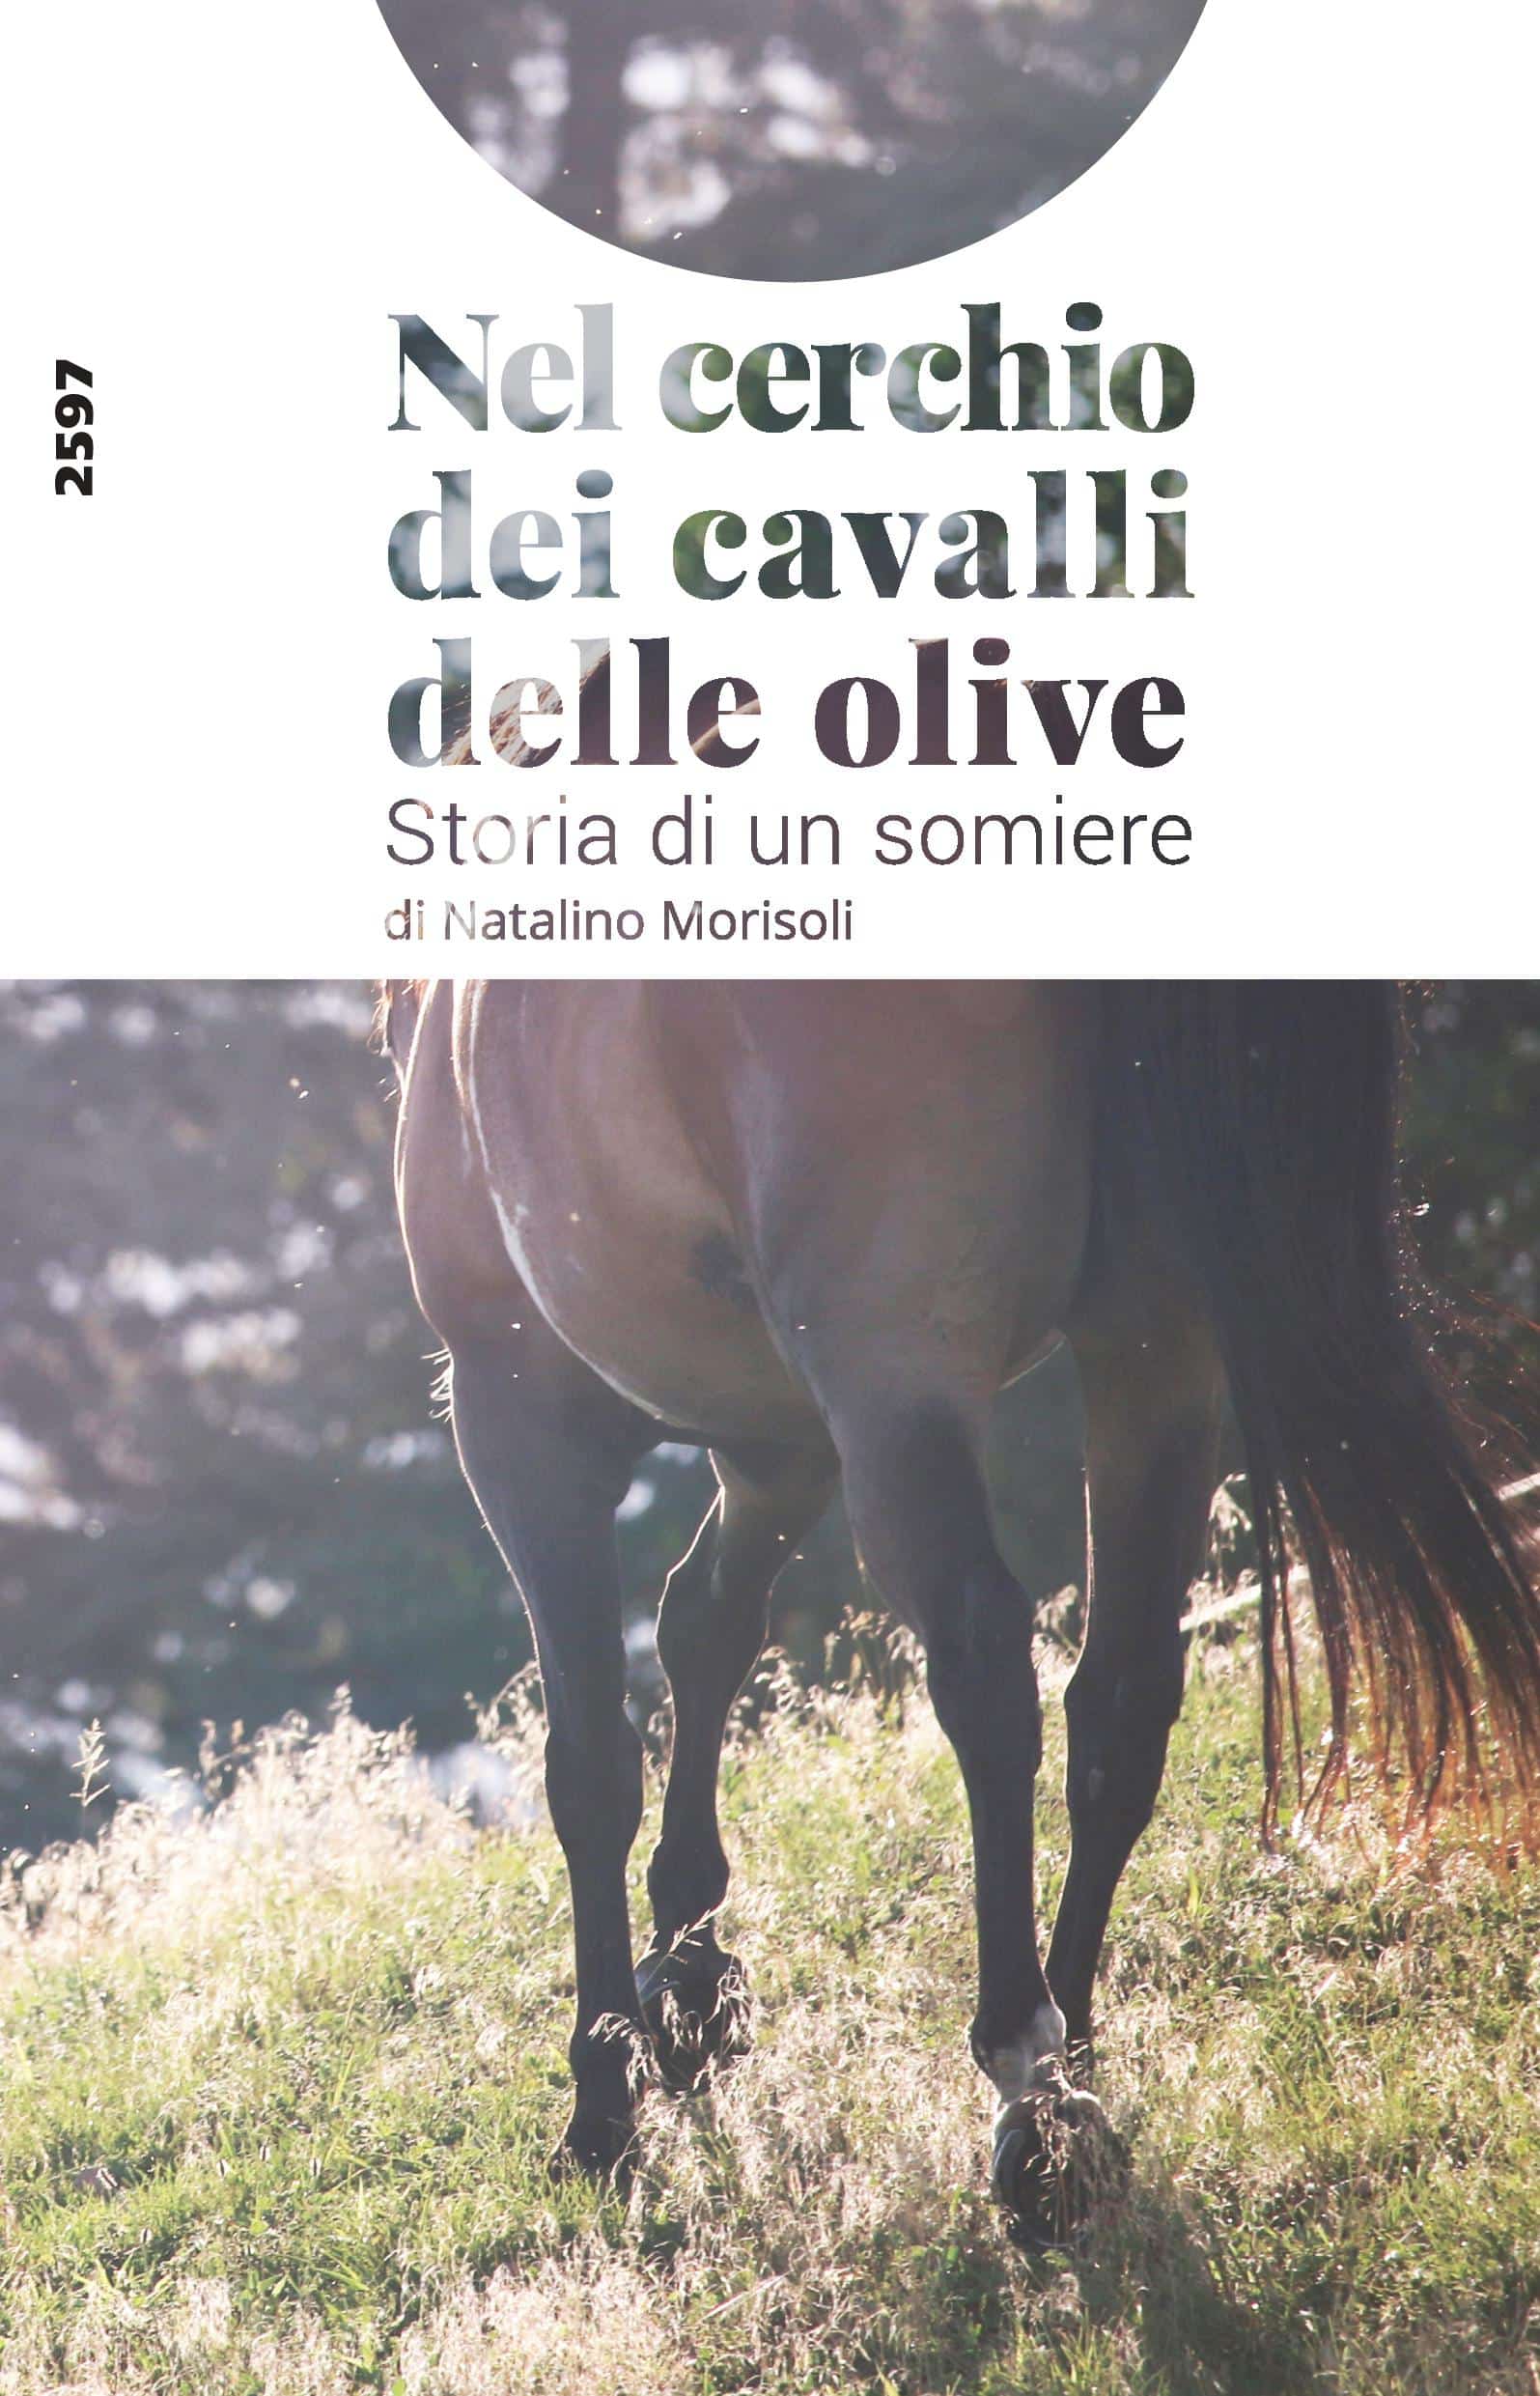 Nel cerchio dei cavalli delle olive - Storia di un somiere